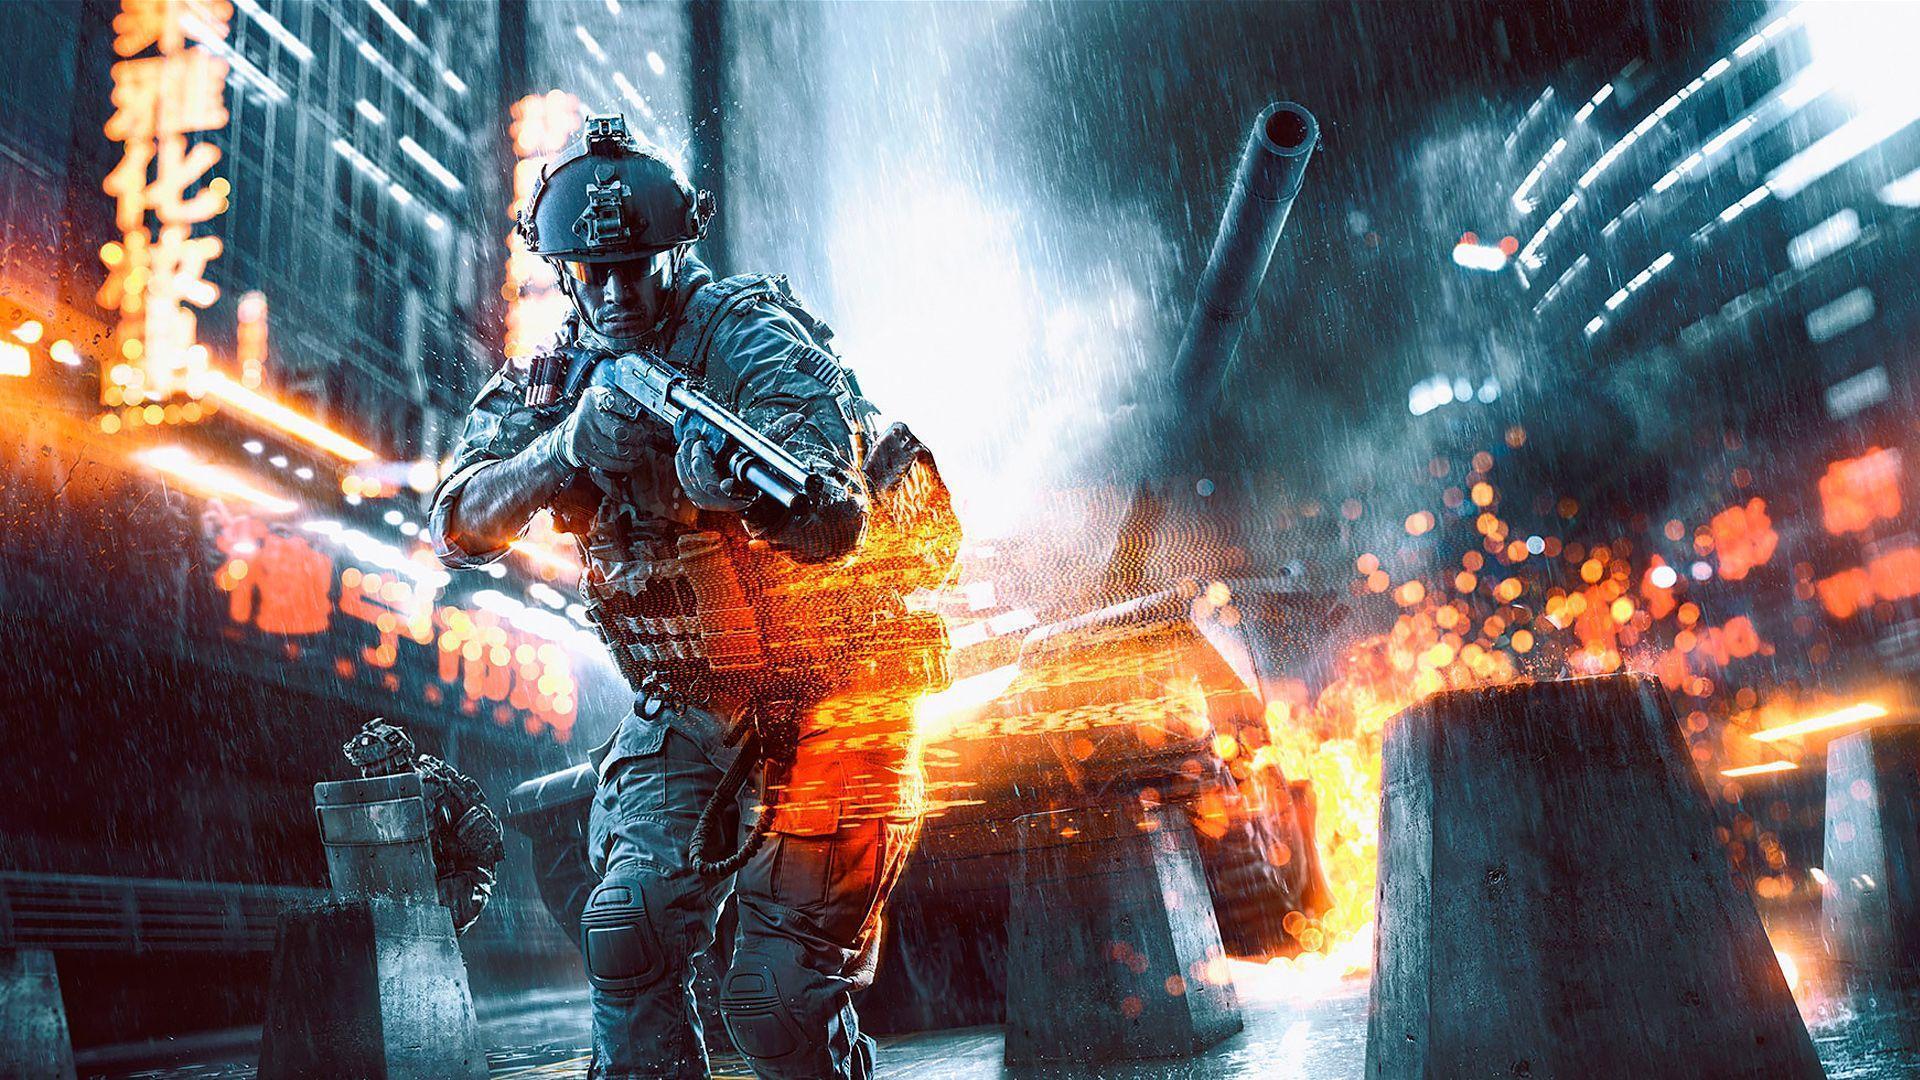 Widescreen HQ Definition Wallpaper of Battlefield 4